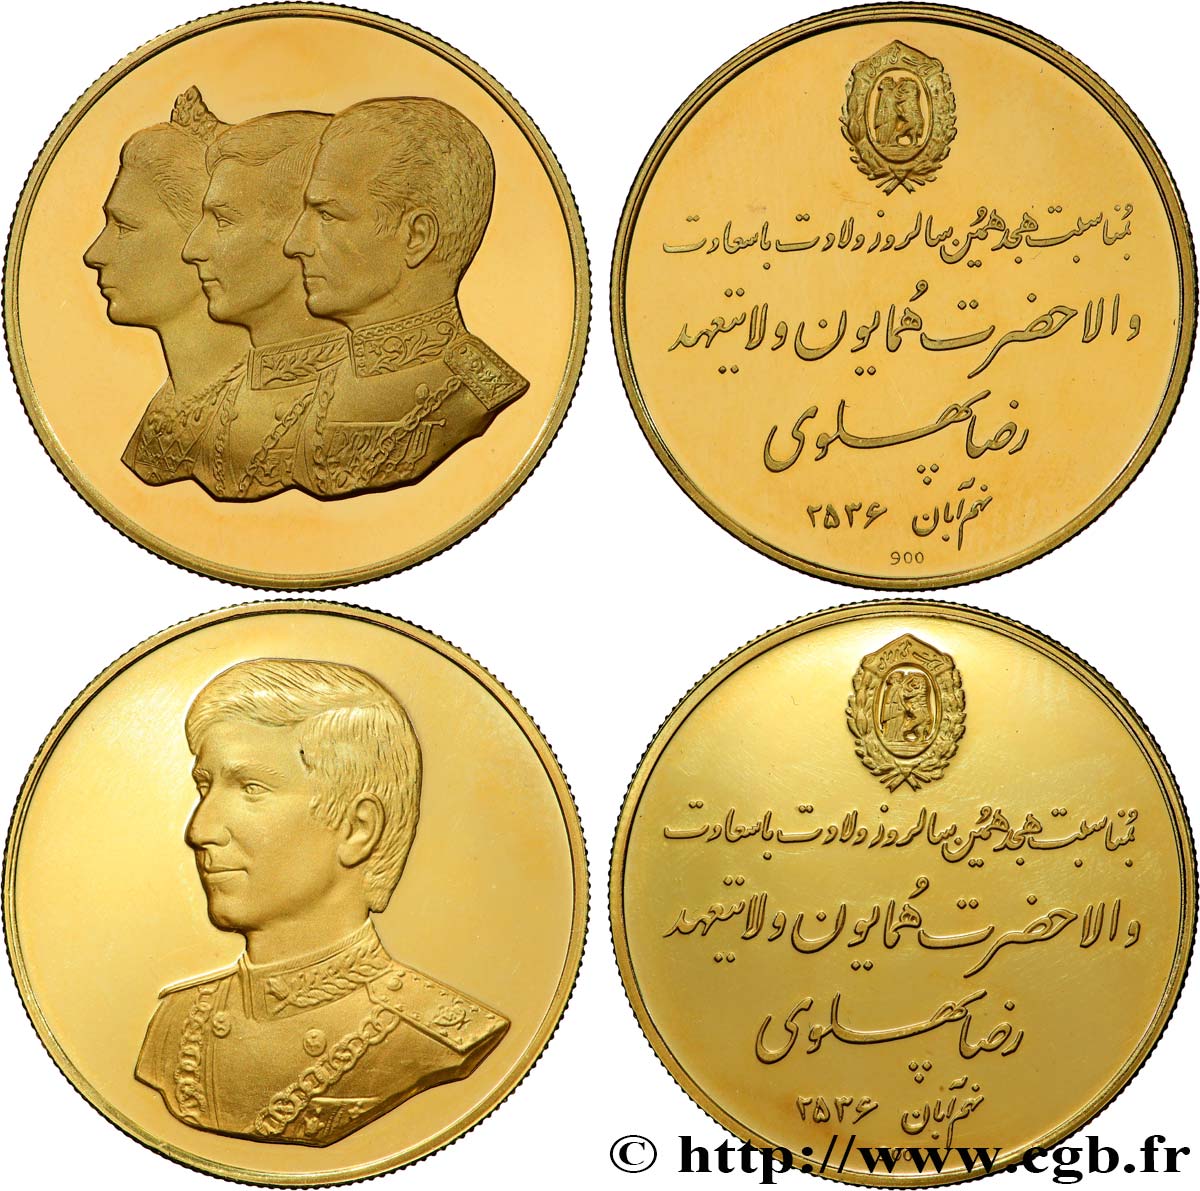 IRAN - MOHAMMAD RIZA PAHLAVI SHAH Lot de 2 médailles, 18e anniversaire du prince héritier Reza Pahlavi MS